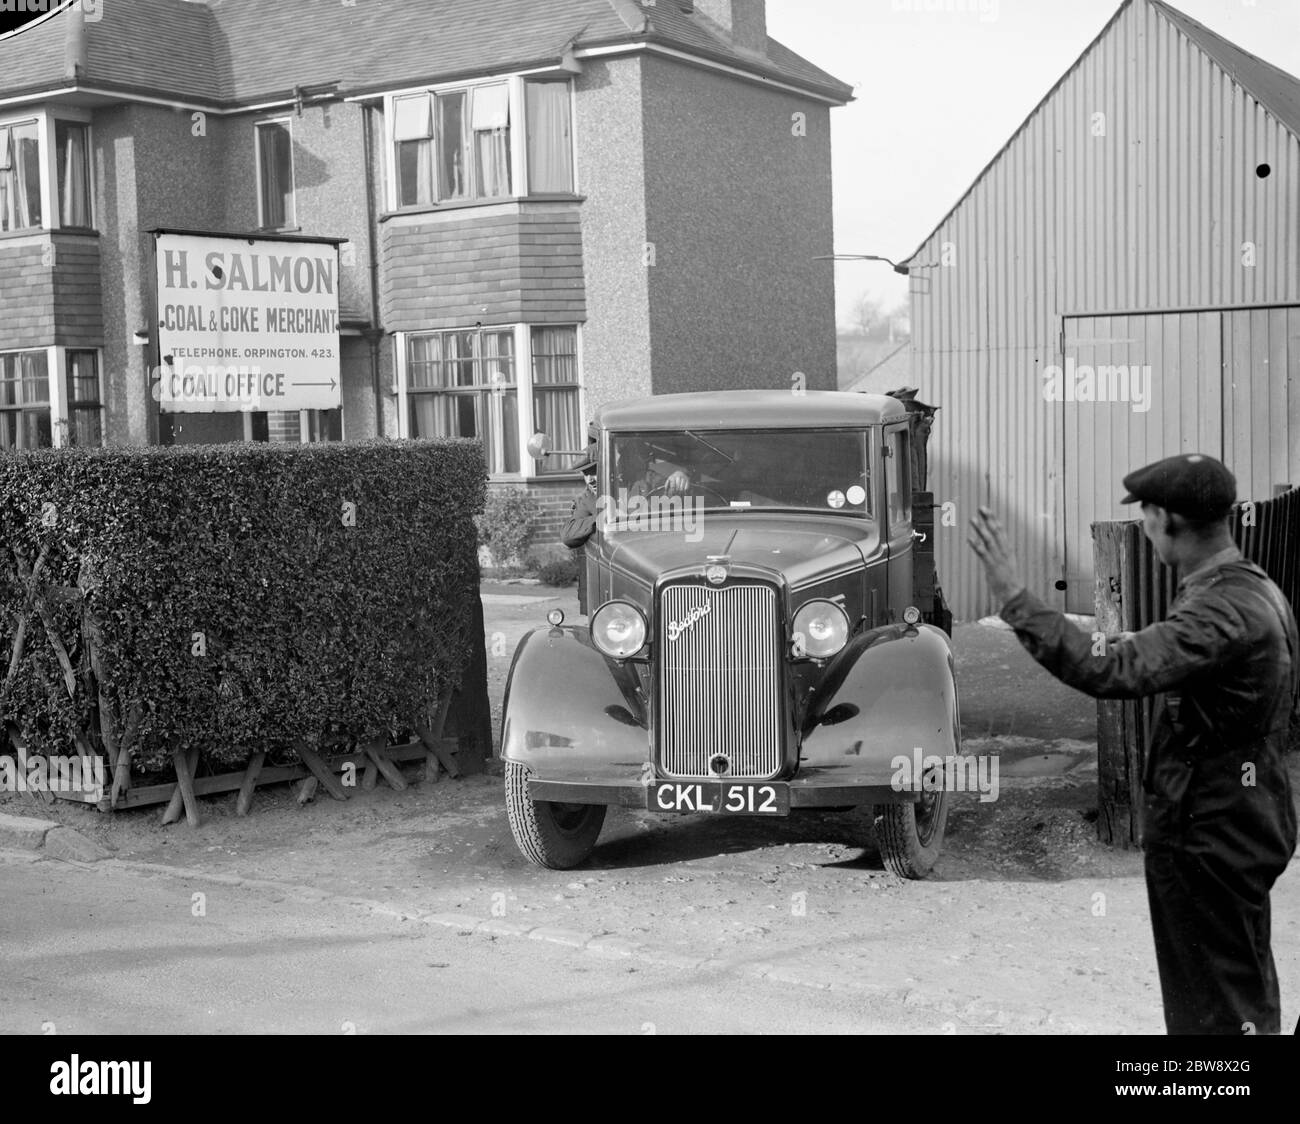 Einer der Lieferwagen von H Salmon, Kohle und Cola Merchants, in Orpington, Kent. 1936 . Stockfoto